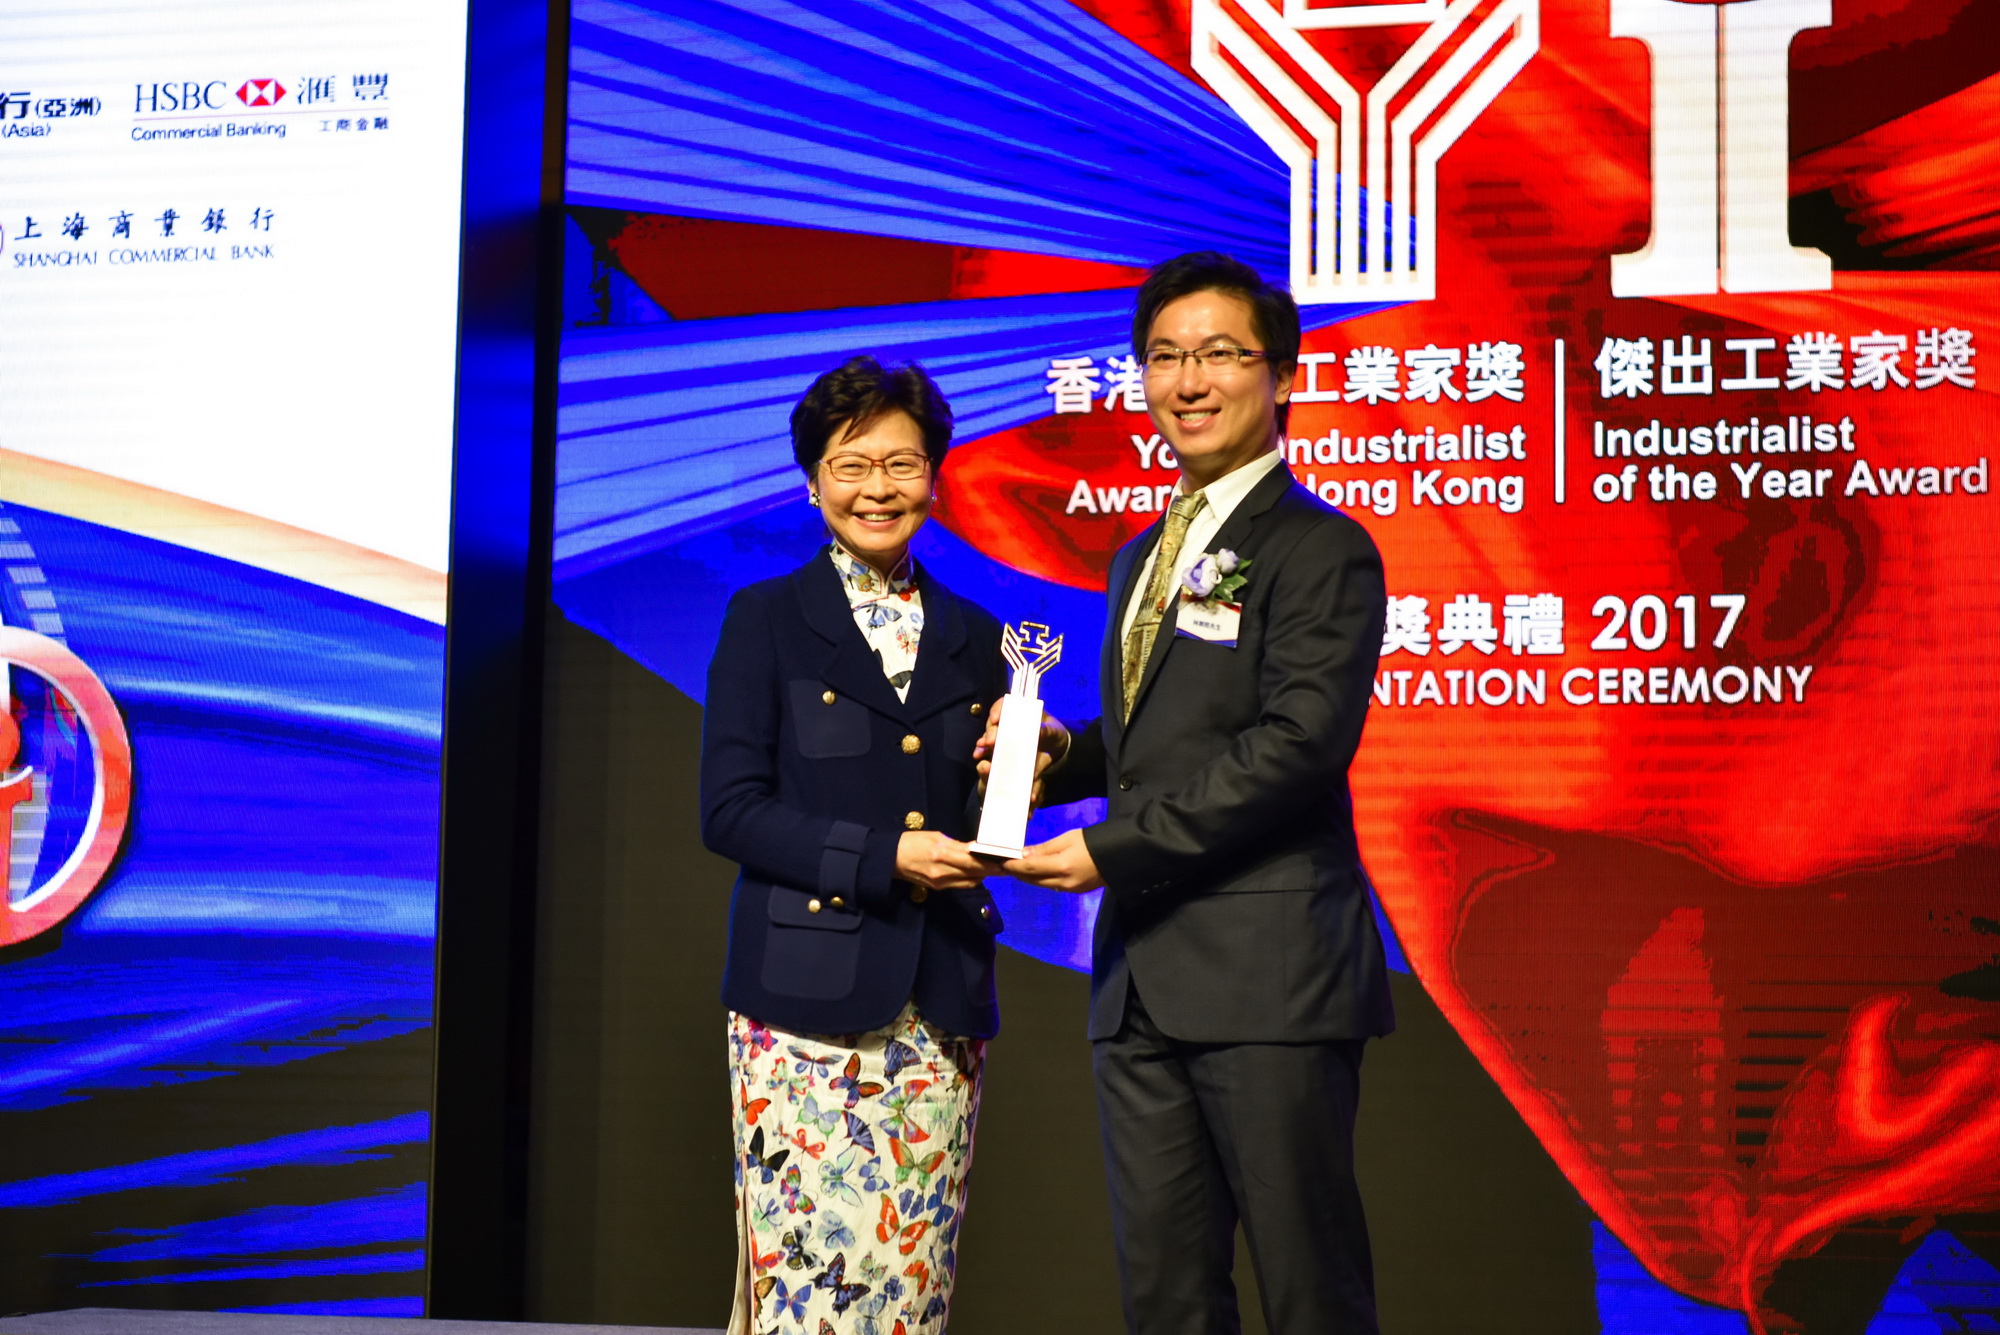 林朗熙（右）是2017年香港青年工業家獎得獎者，回港後加入工業界發揮所長。